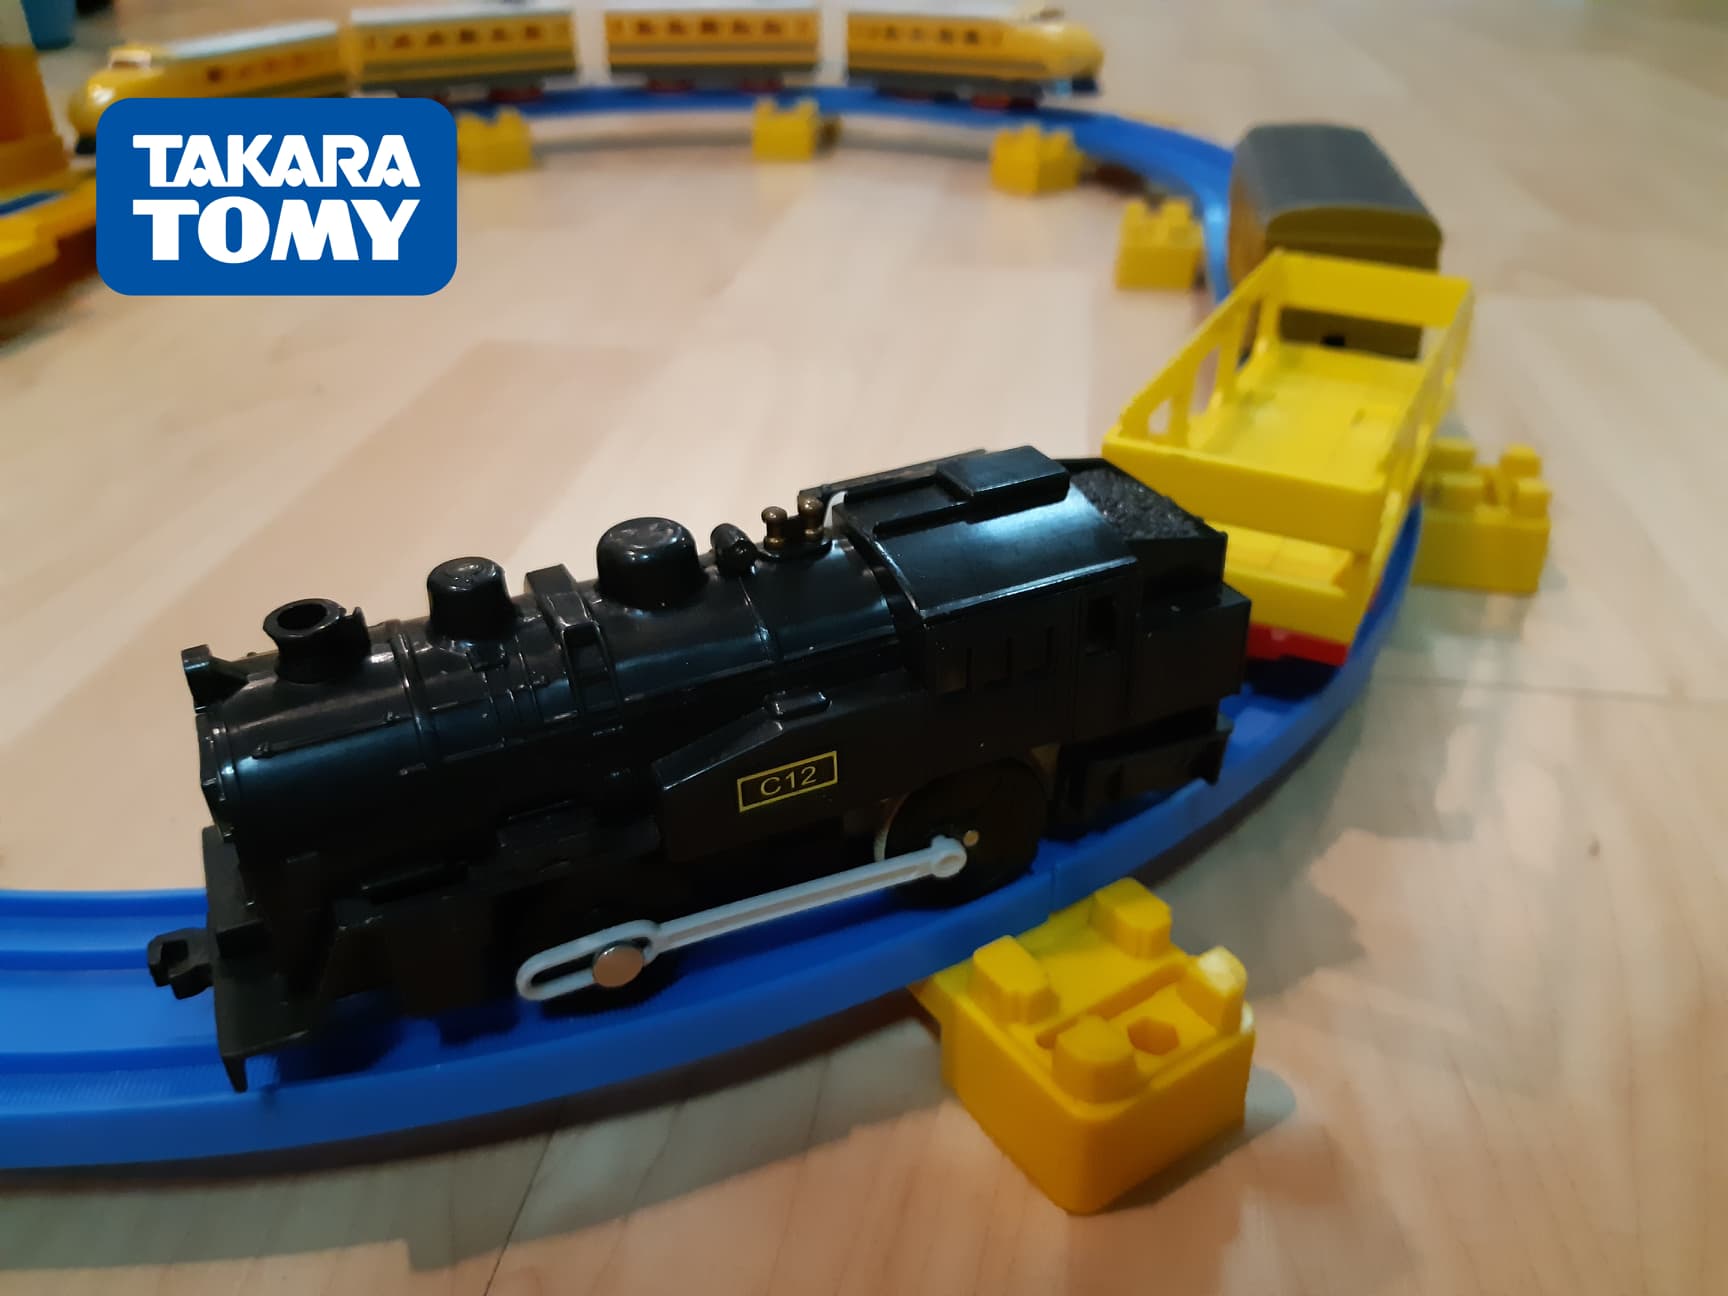 takara tomy รถไฟ plarail แบบรถจักรไอน้ำ โบราณ พร้อมพ่วงหลังสองพ่วง ของแท้ ใส่ถ่าน วิ่งรางฟ้า สภาพดี การผ่านเช็คและรับประกันระบบ (1ขบวน)